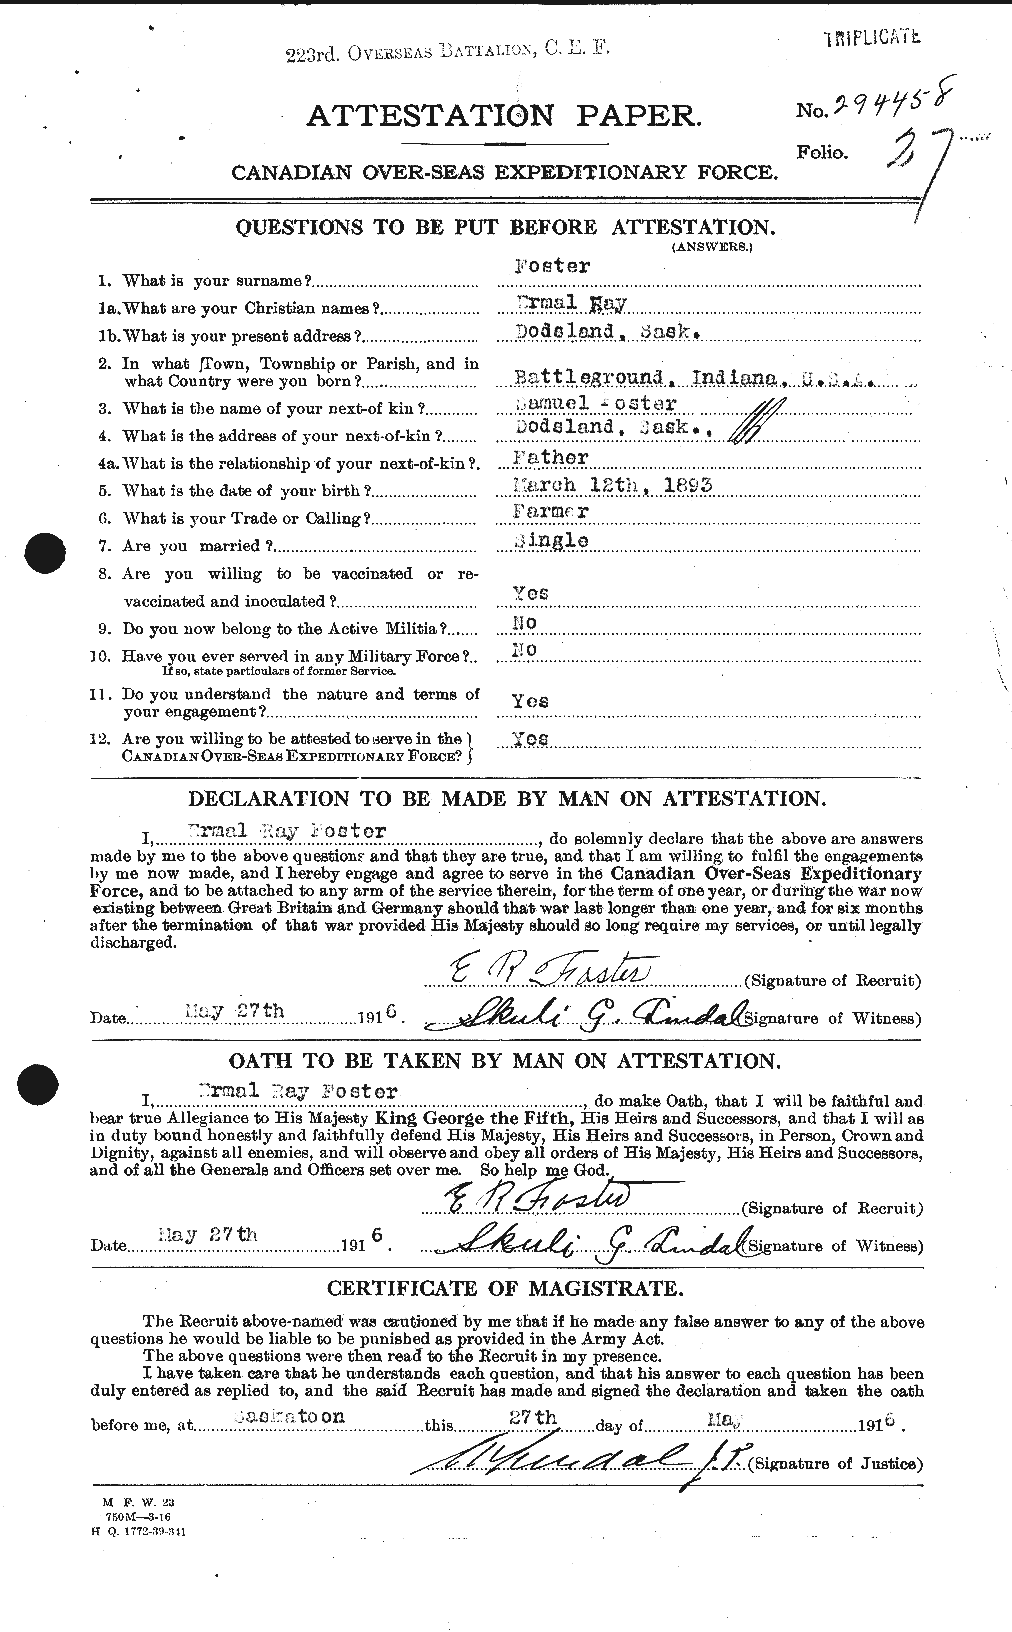 Dossiers du Personnel de la Première Guerre mondiale - CEC 330599a